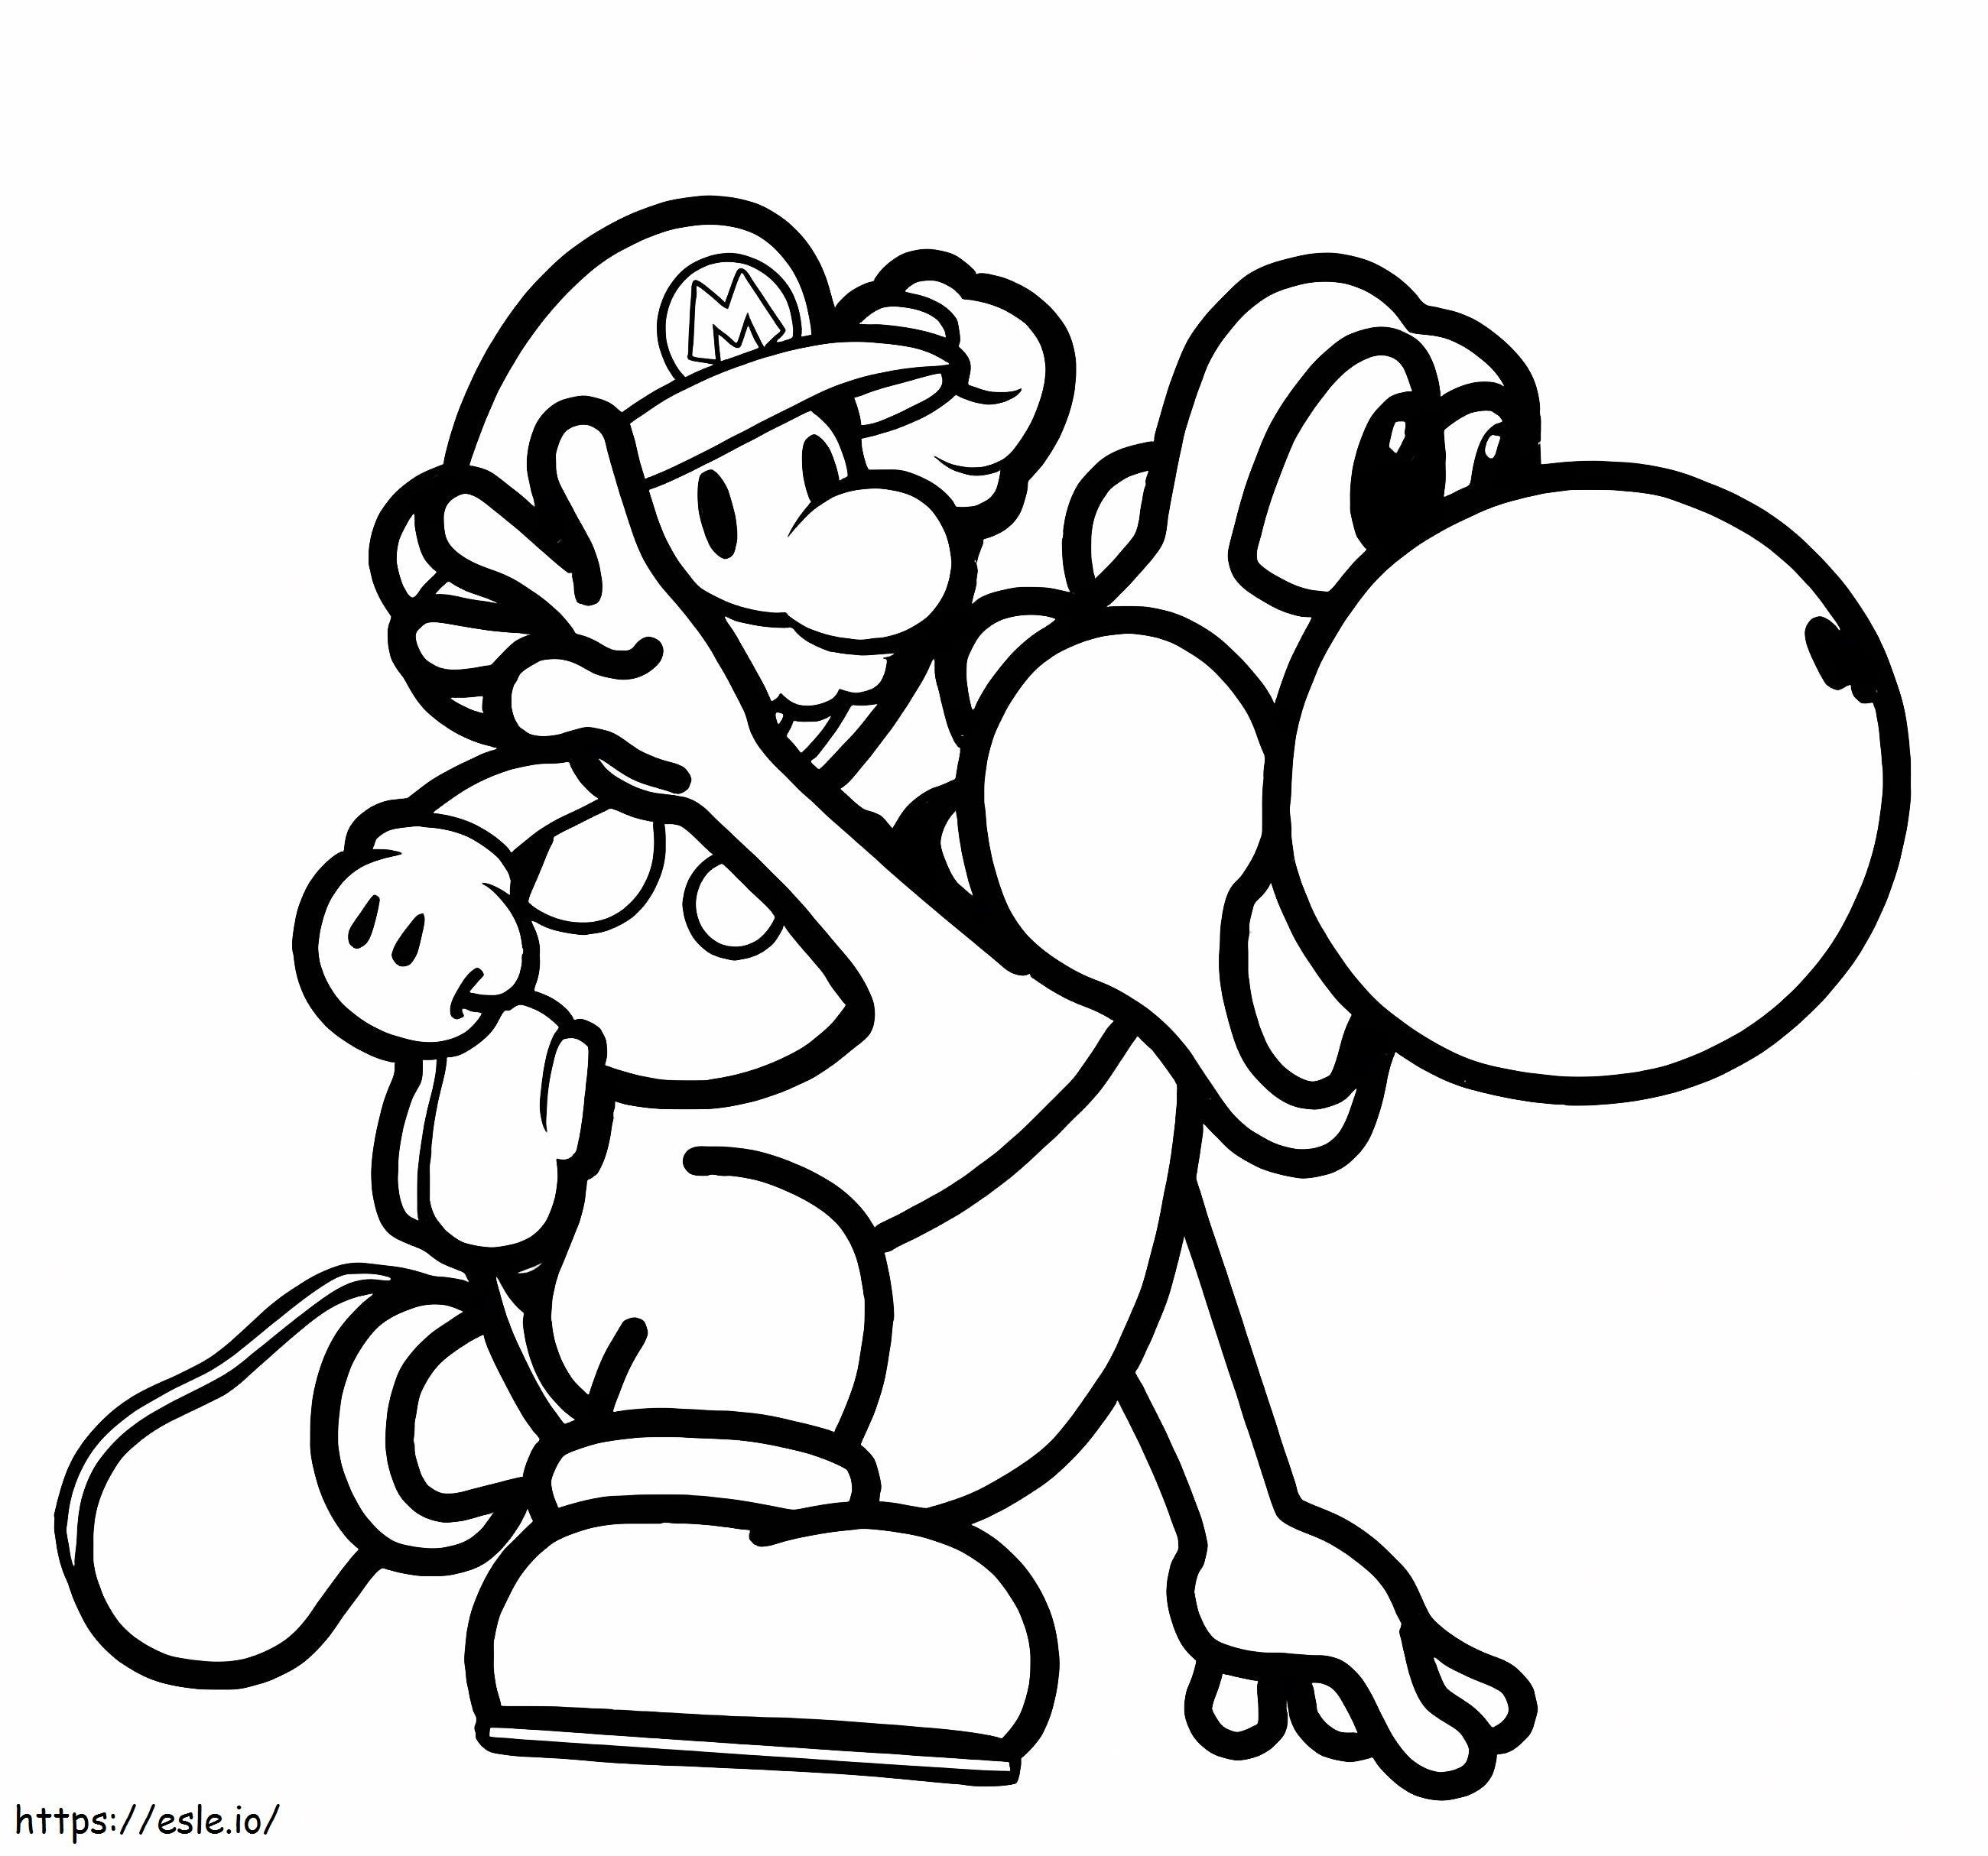 Yoshi Et Mario coloring page